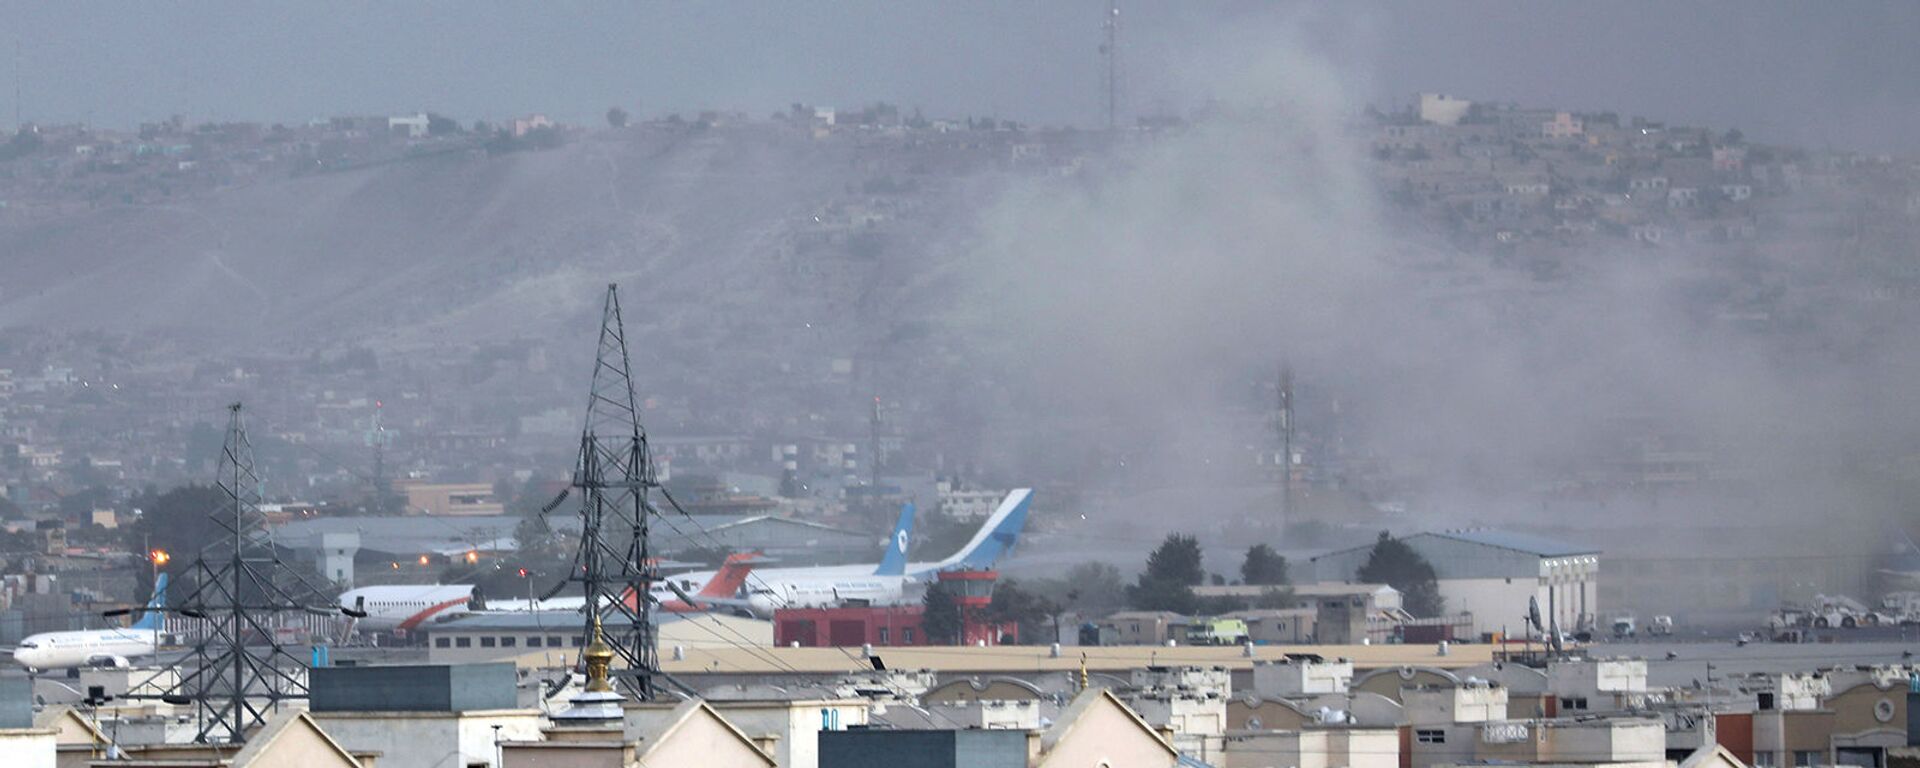 Дым от взрыва возле аэропорта в Кабуле (26 августа 2021). Афганистан - Sputnik Армения, 1920, 26.08.2021